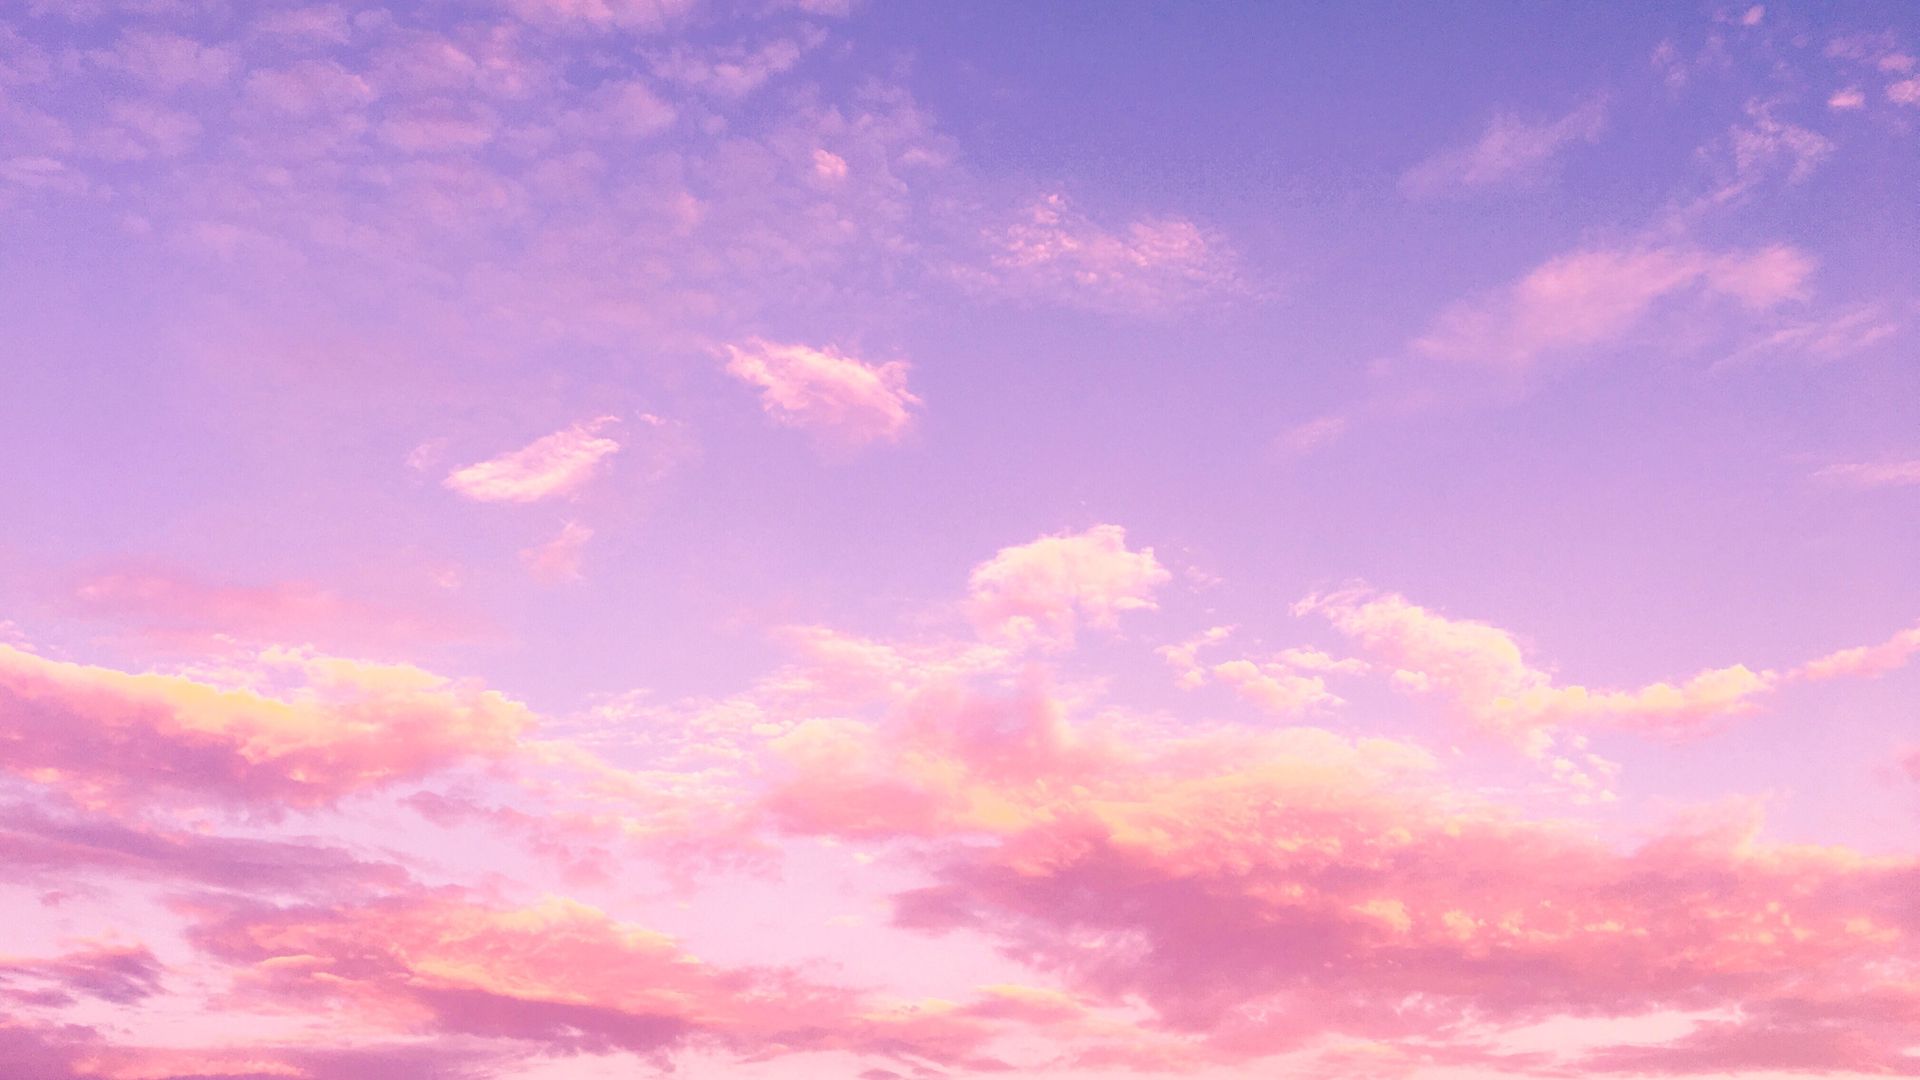 Thủy tinh và mây hồng kết hợp với nhau để tạo nên những bức hình nền máy tính tuyệt đẹp, đầy mộng mơ. Hãy tạo một không gian làm việc tuyệt vời với sự kết hợp của những tinh túy giữa màu hồng mềm mại và cảm giác mây mù mịt.